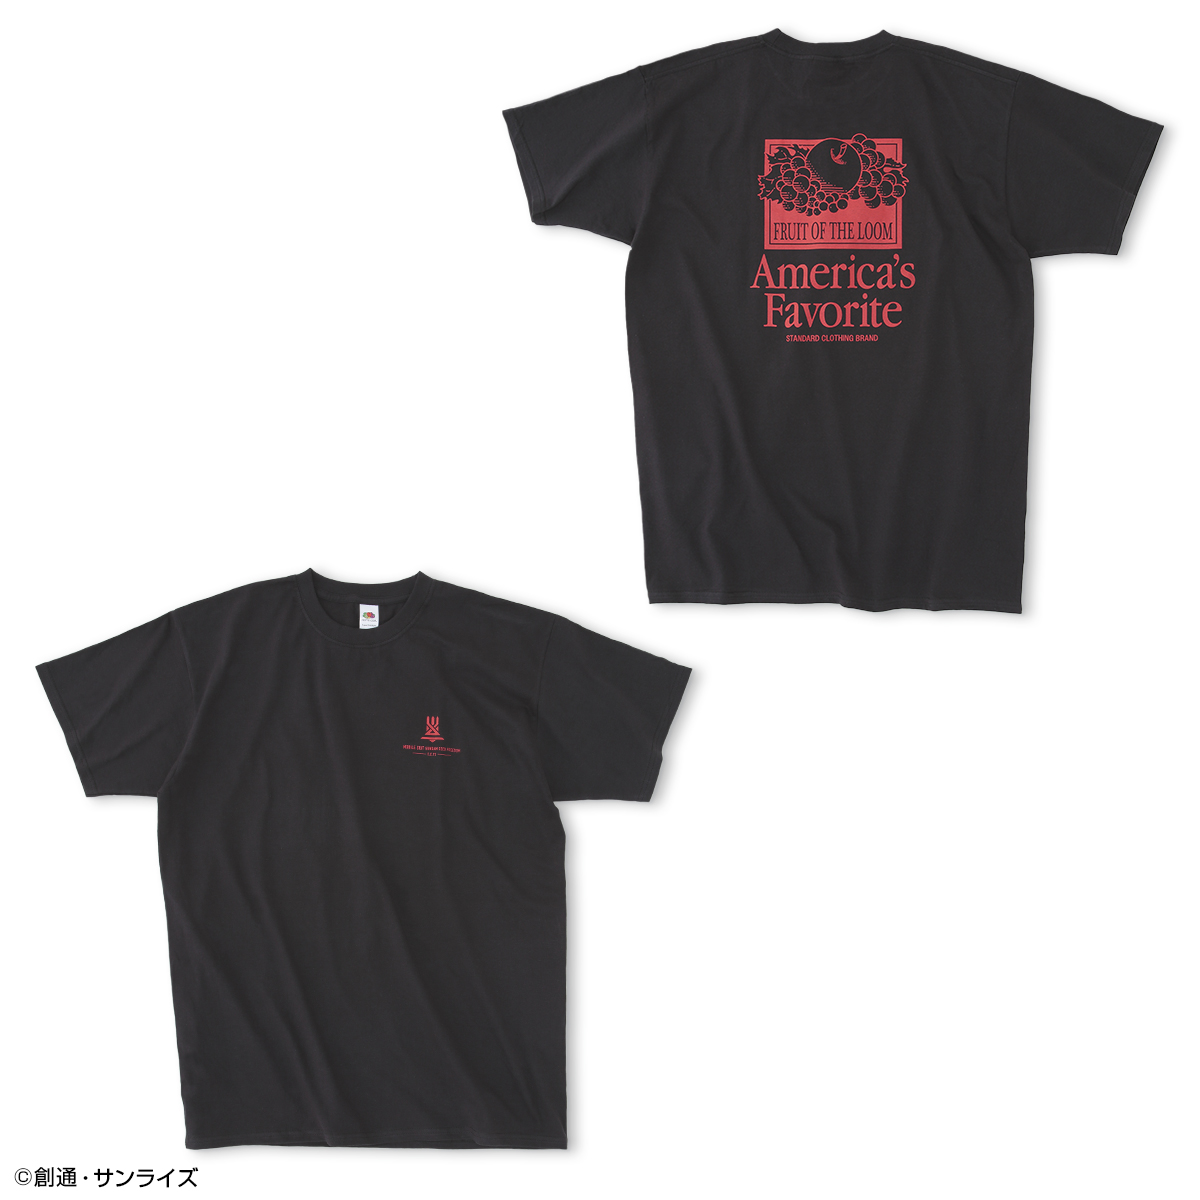 劇場版『機動戦士ガンダムSEED FREEDOM』公開記念コラボ企画、「FRUIT OF THE LOOM」Tシャツ &「NEW ERA(R)」キャップが登場!